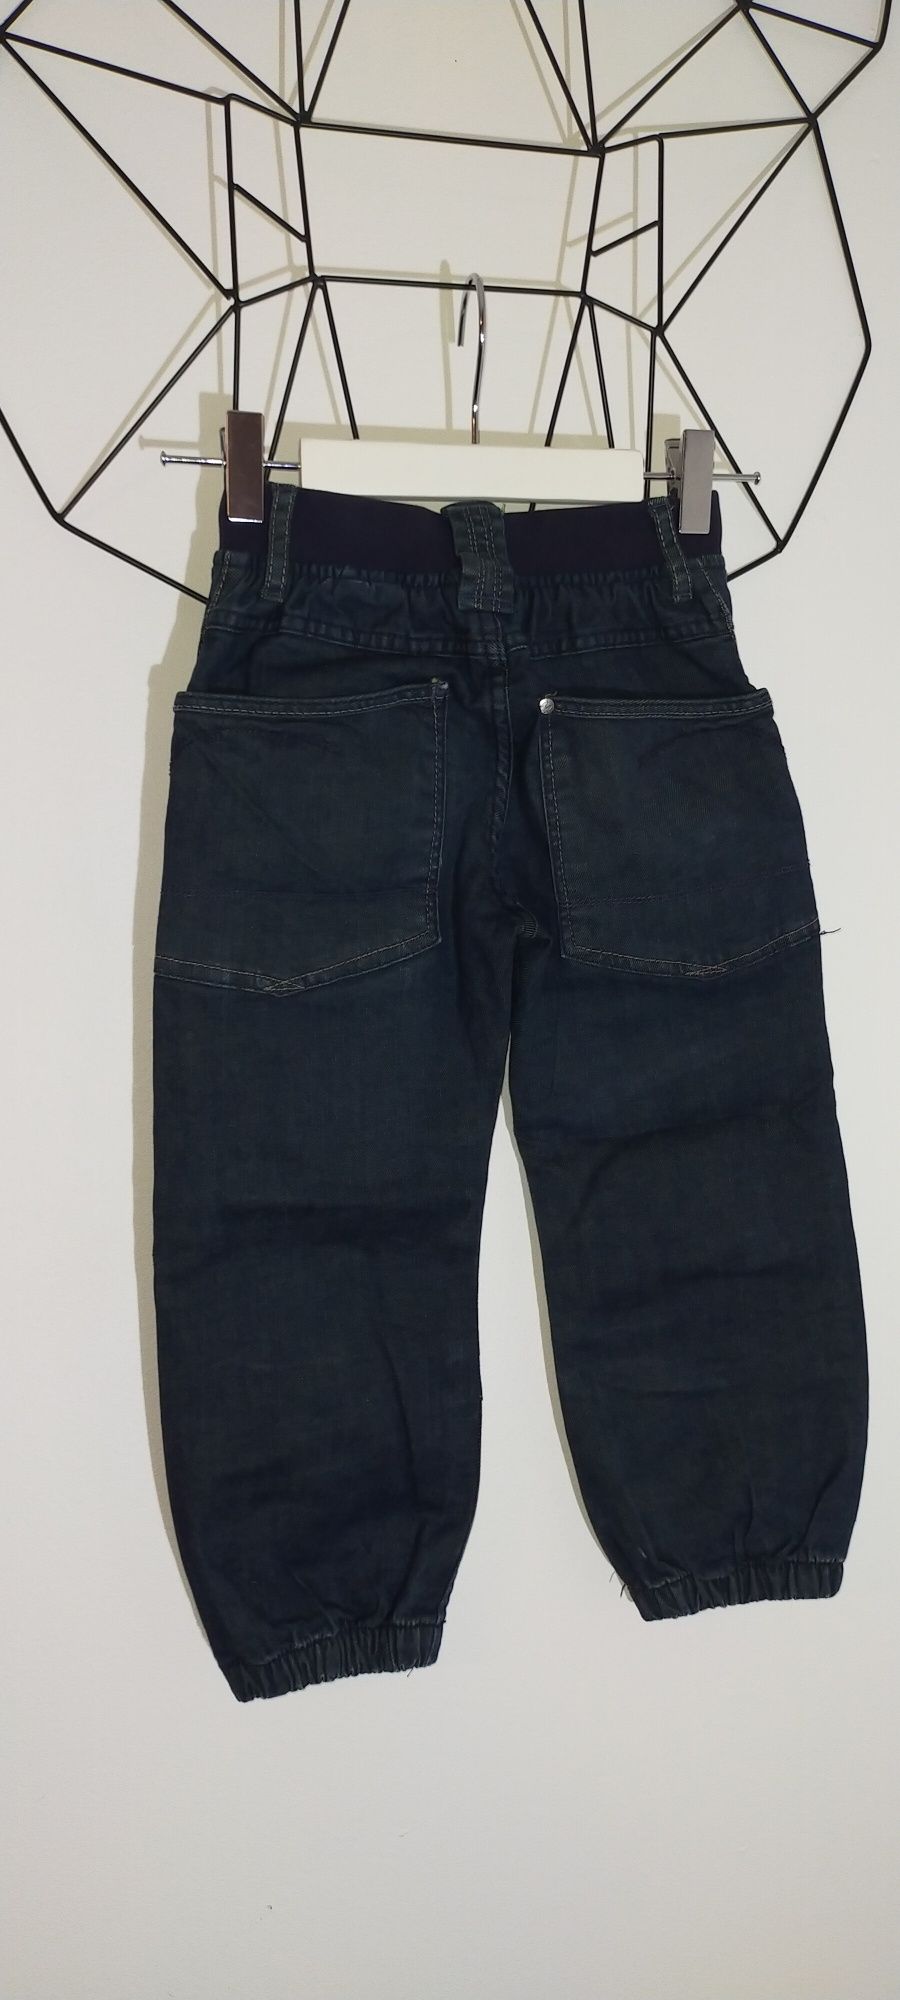 Spodnie jeansowe jeans granatowe 110 alladynki na gumce